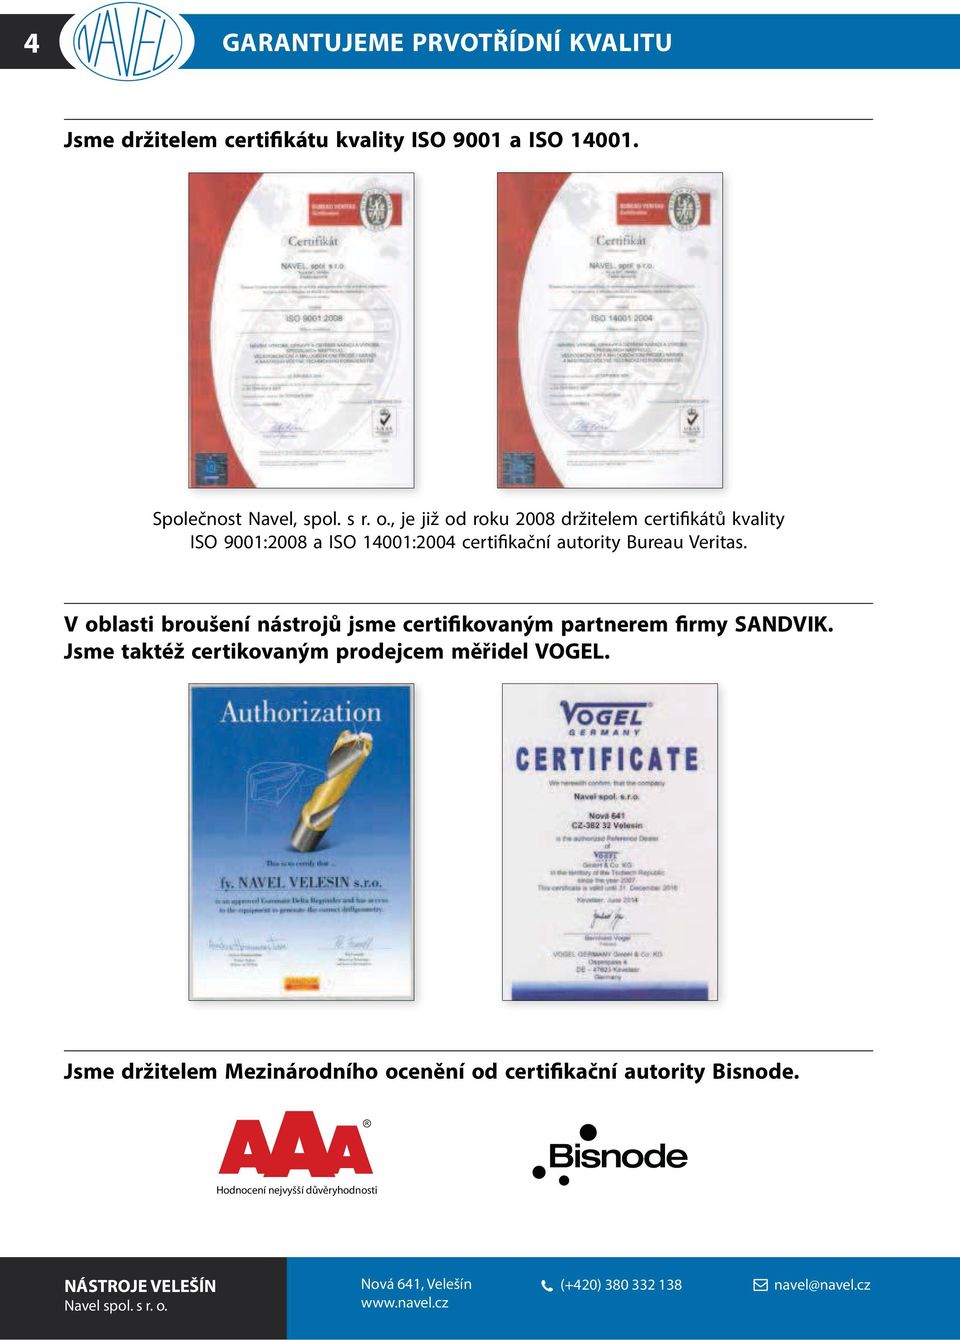 V oblasti broušení nástrojů jsme certifikovaným partnerem firmy SANDVIK. Jsme taktéž certikovaným prodejcem měřidel VOGEL.